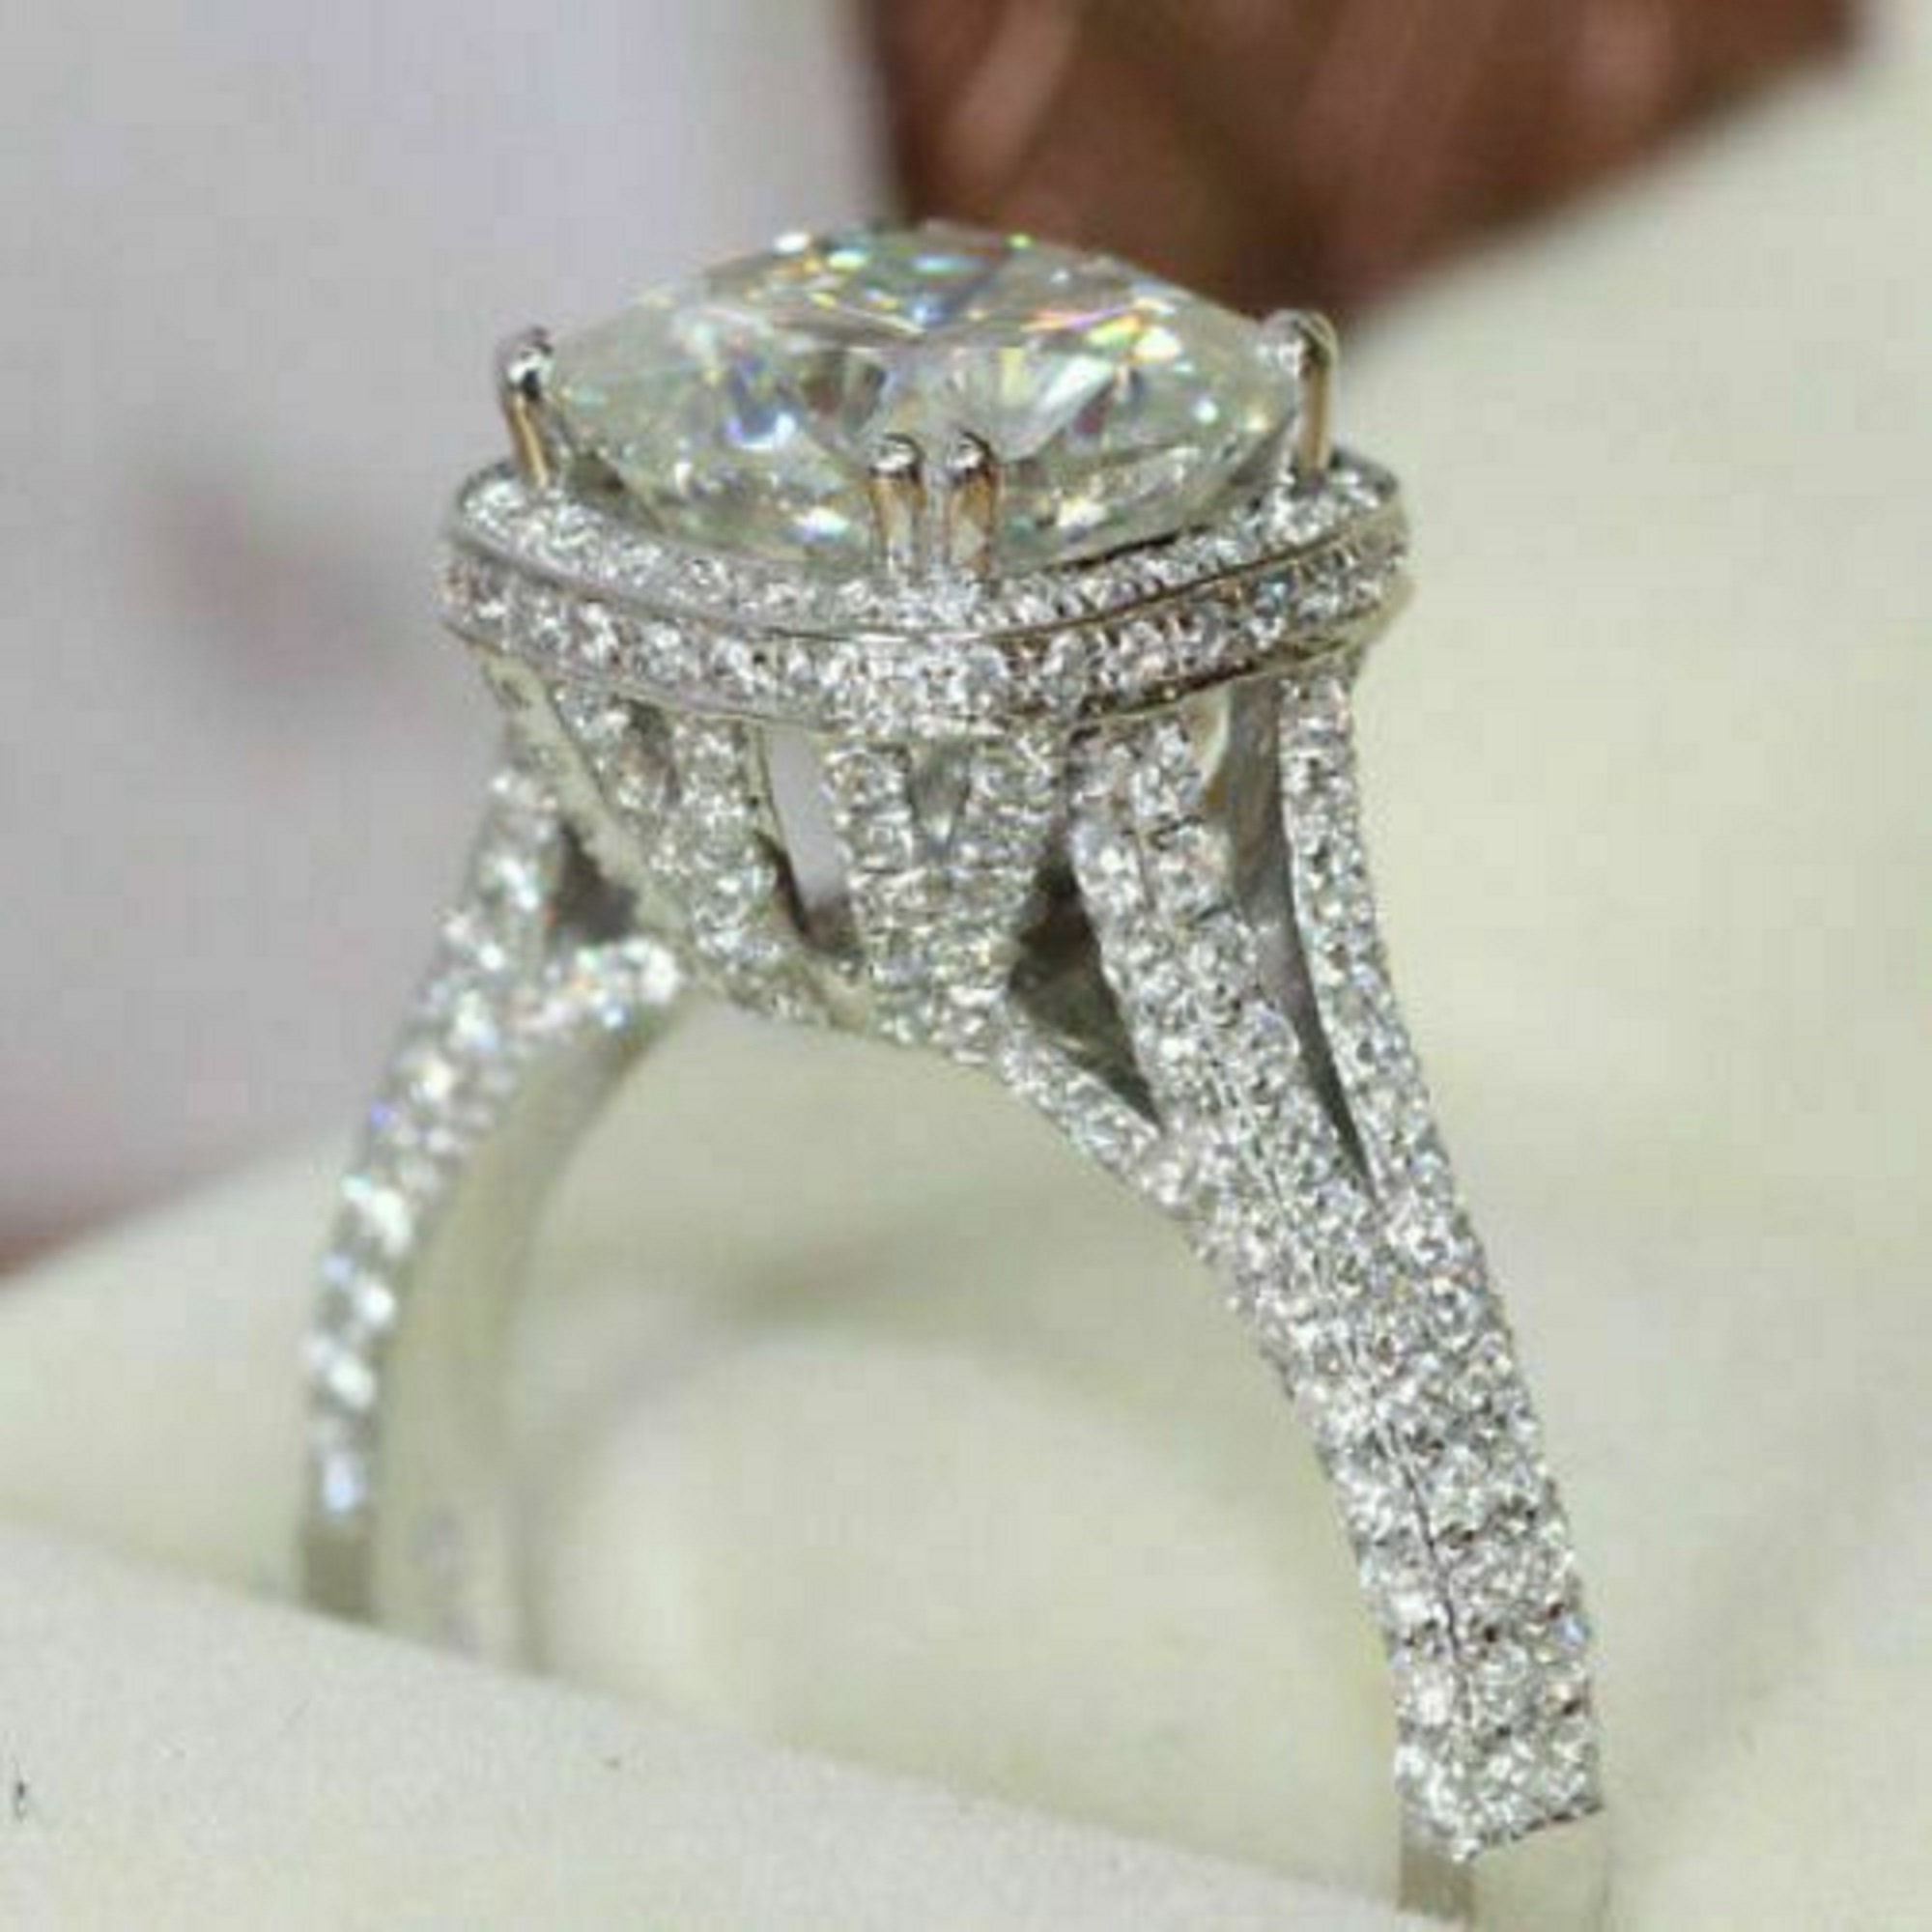 Unic Engagement Ring 4.11ct White Cushion Cut Diamond Halo | Etsy